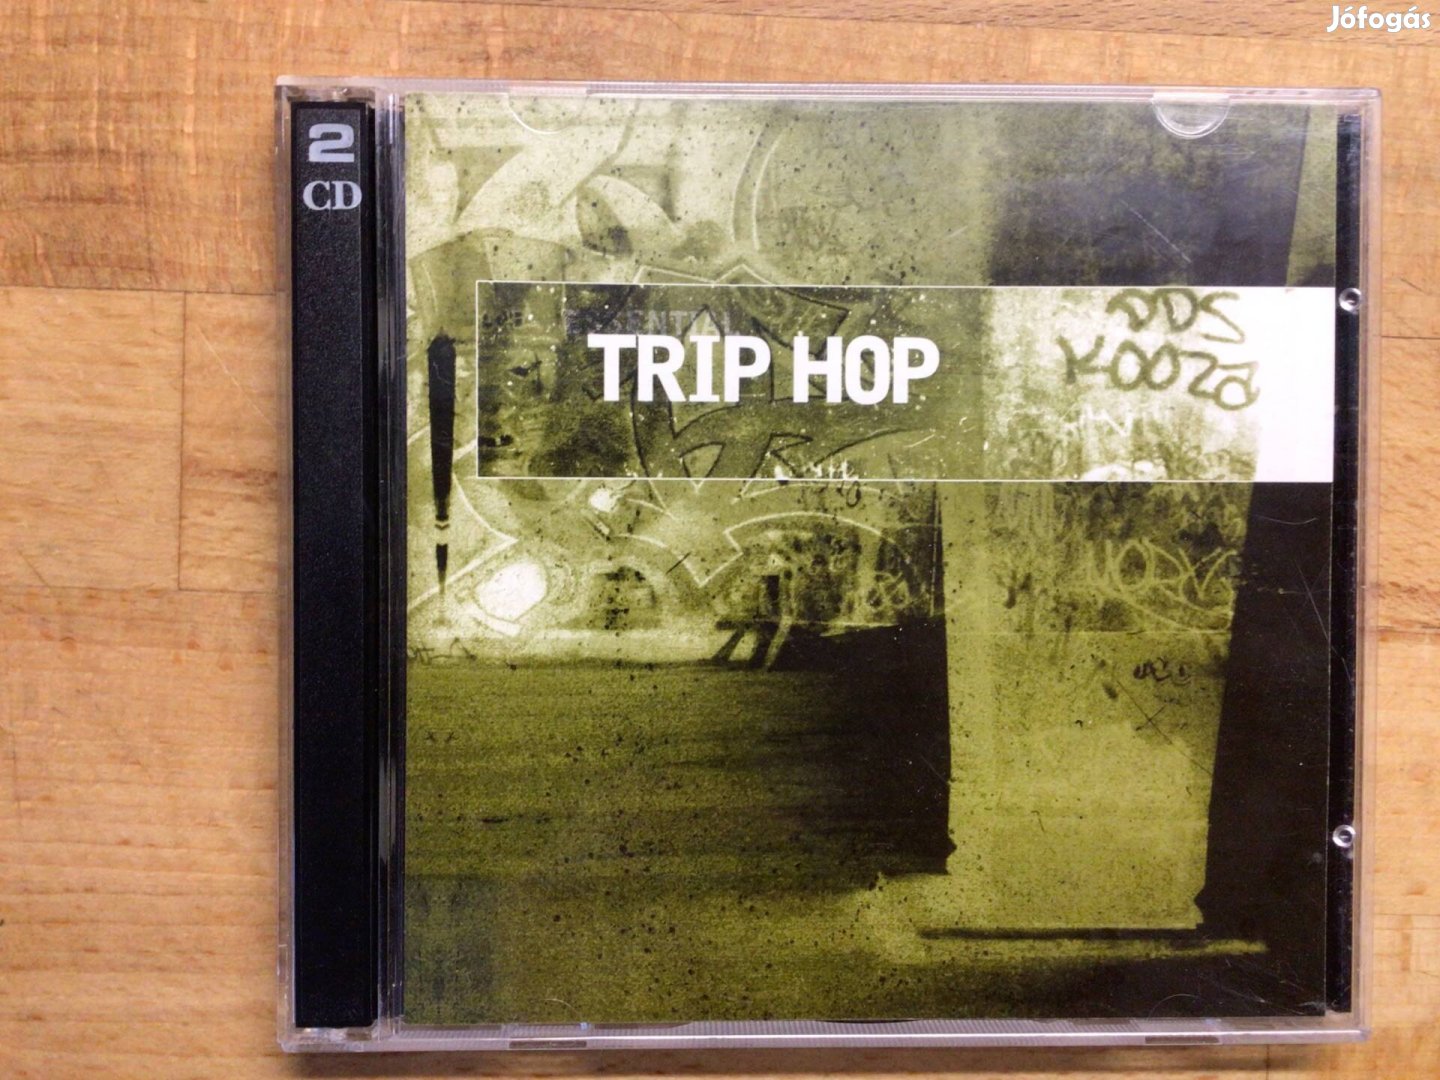 Essential Trip Hop, dupla cd album